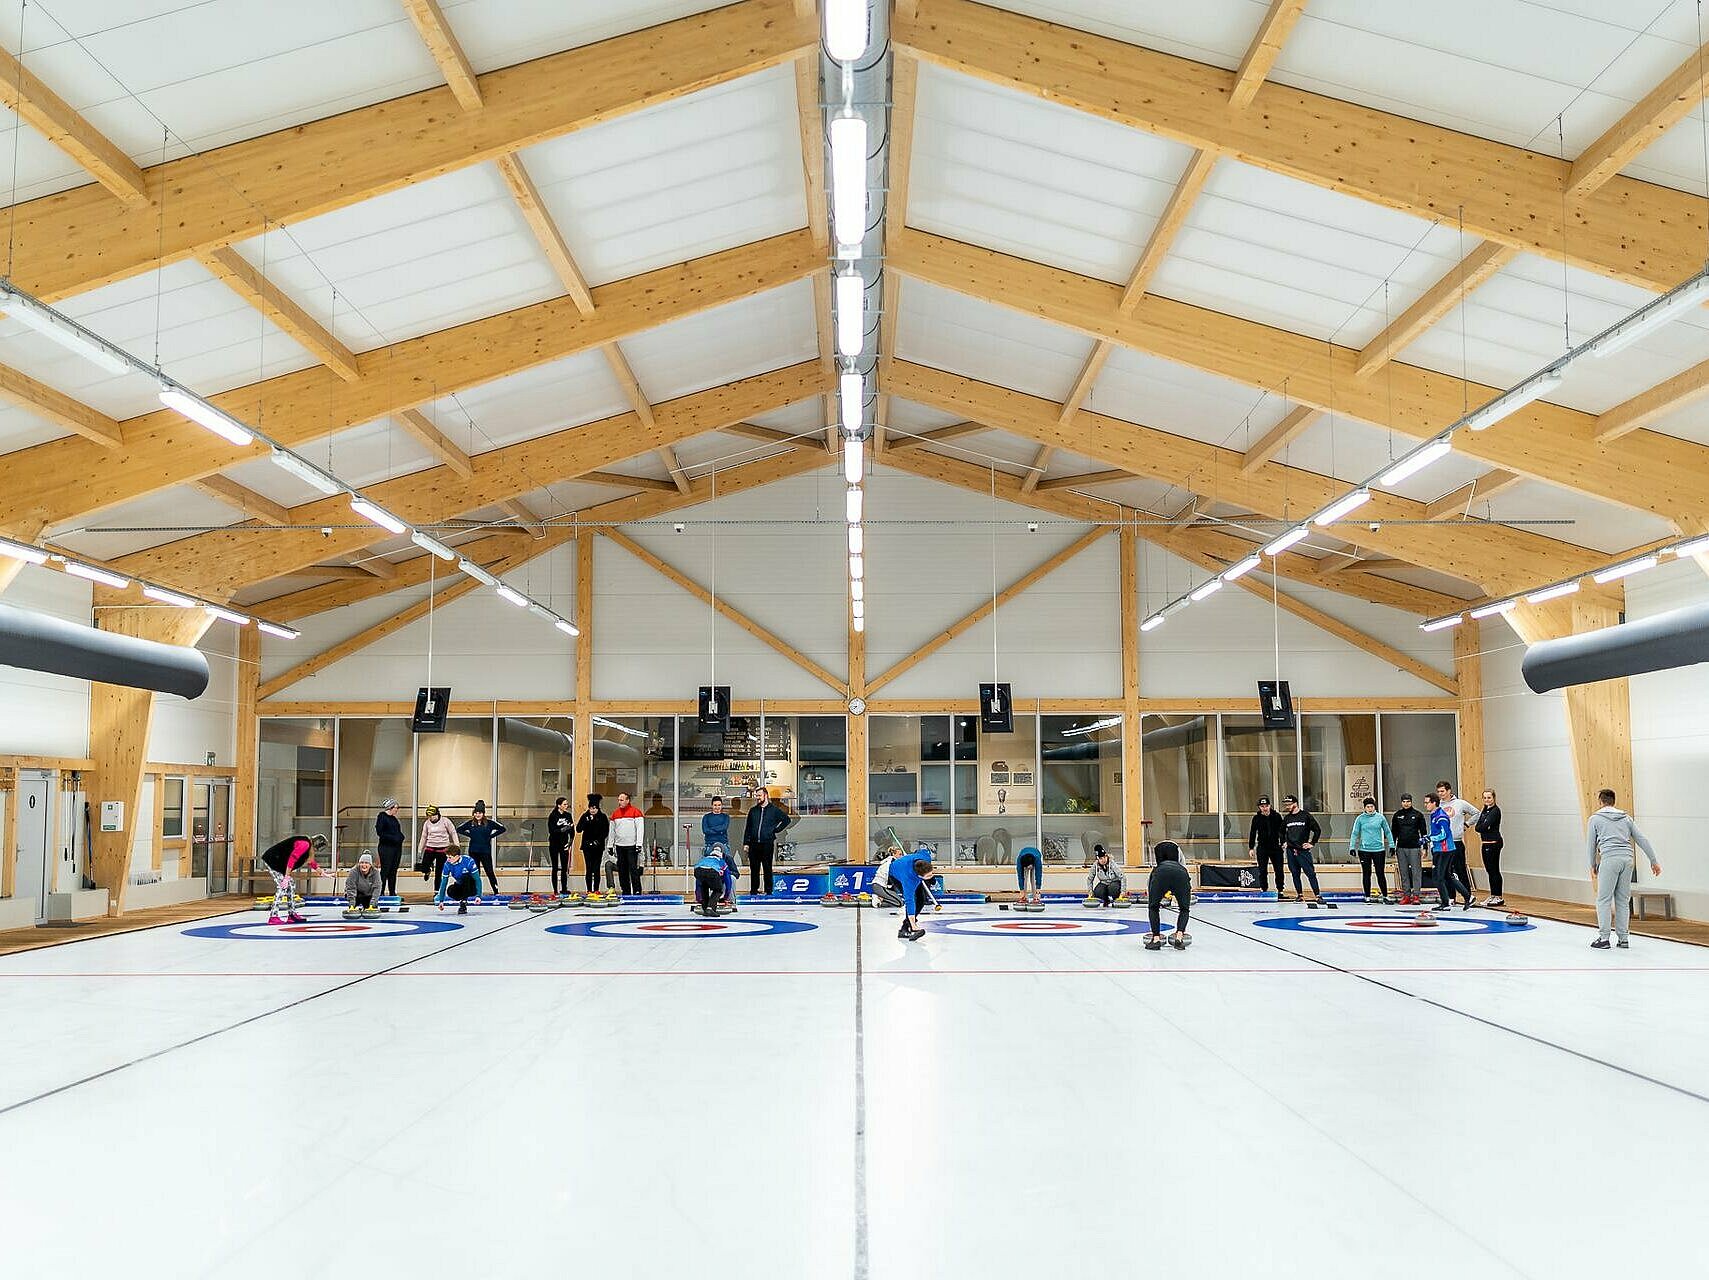 Curling Łódź 